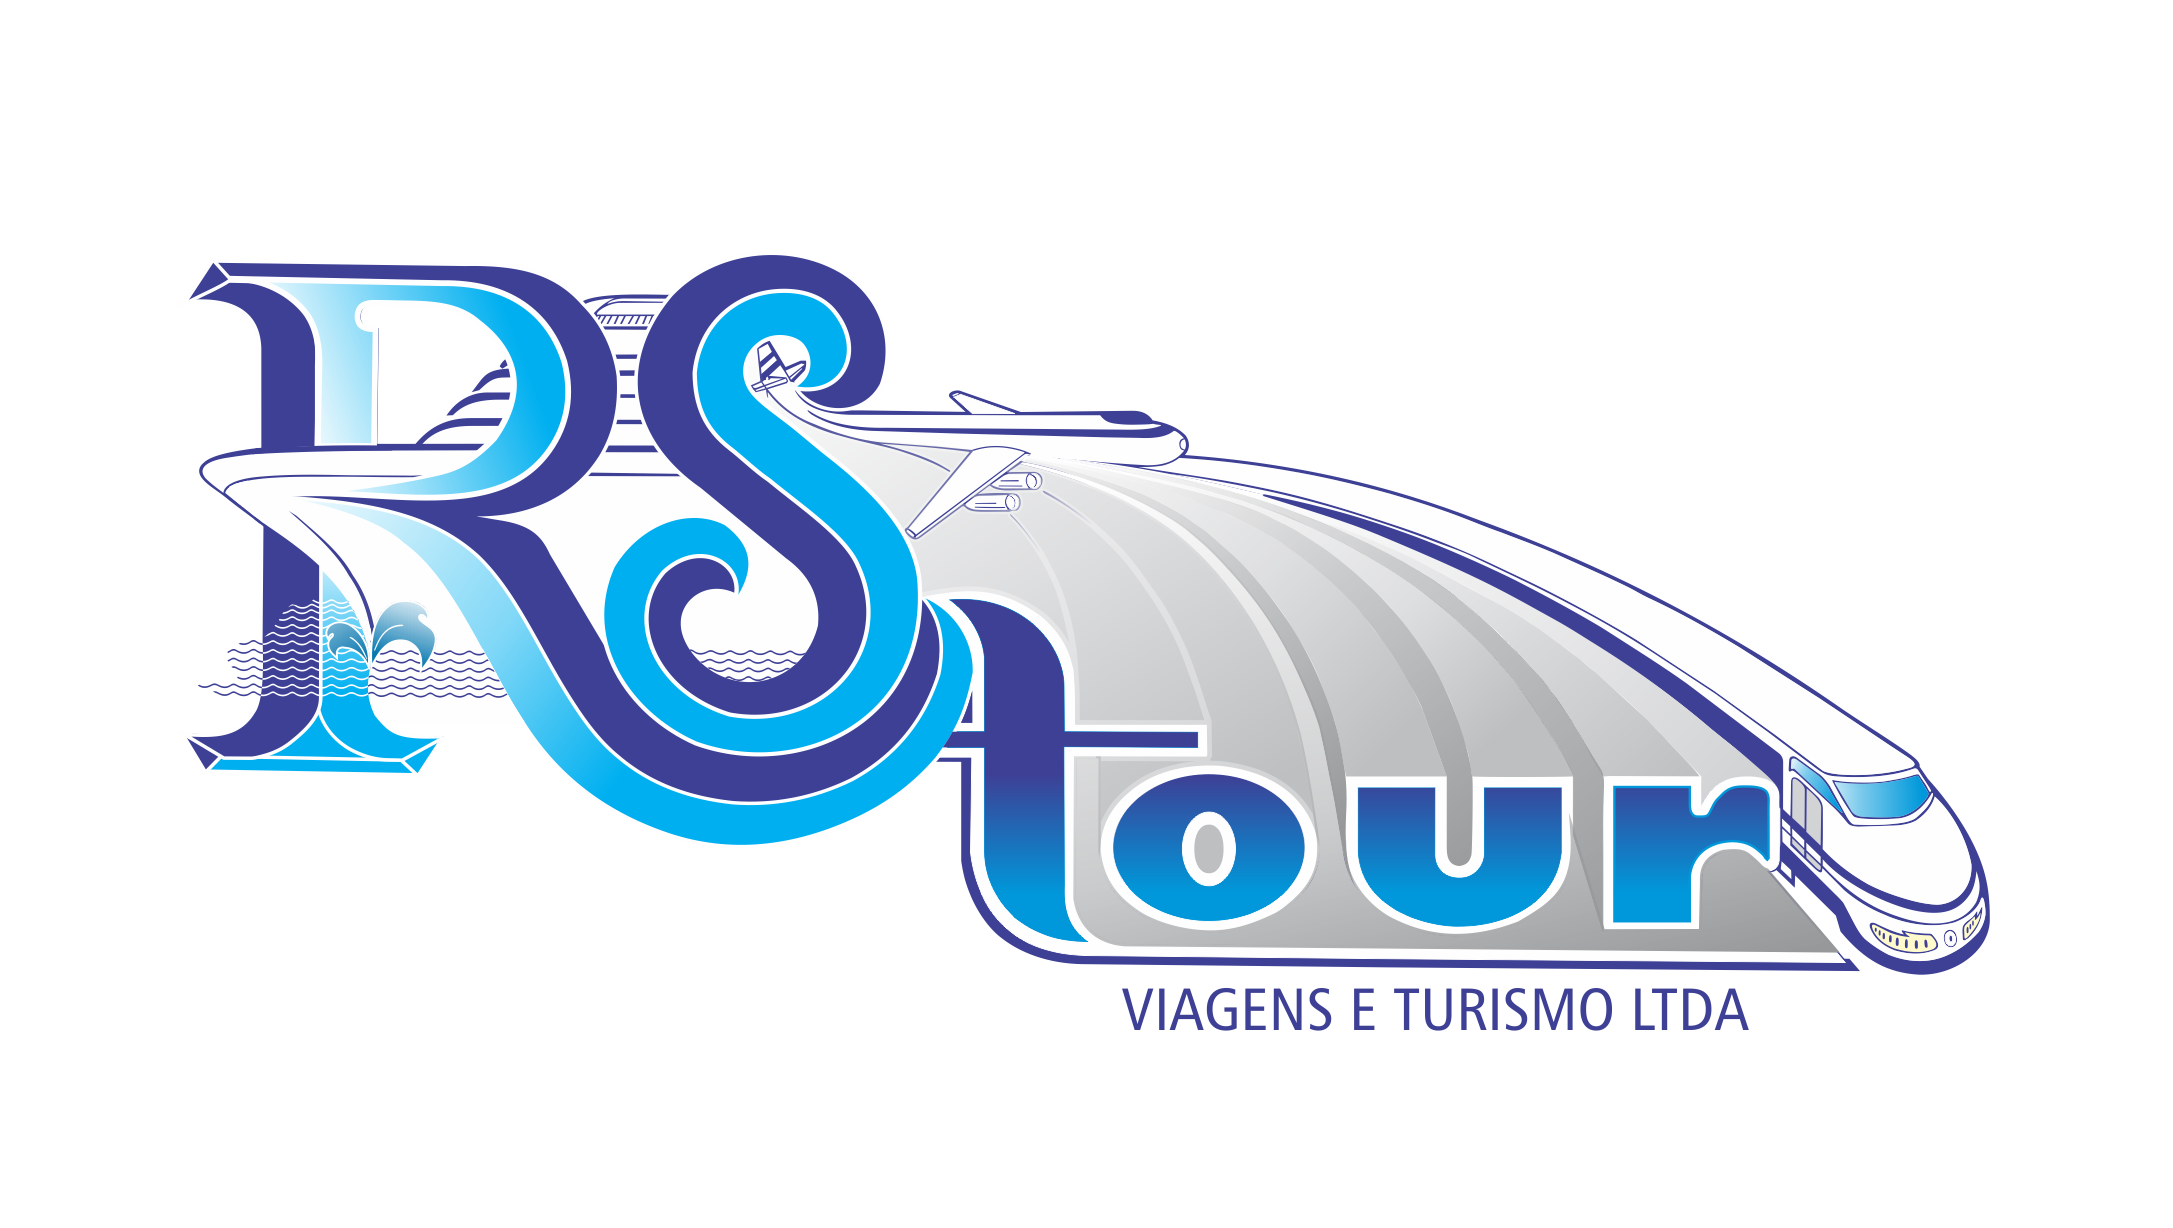 rs tour viagens e turismo ltda